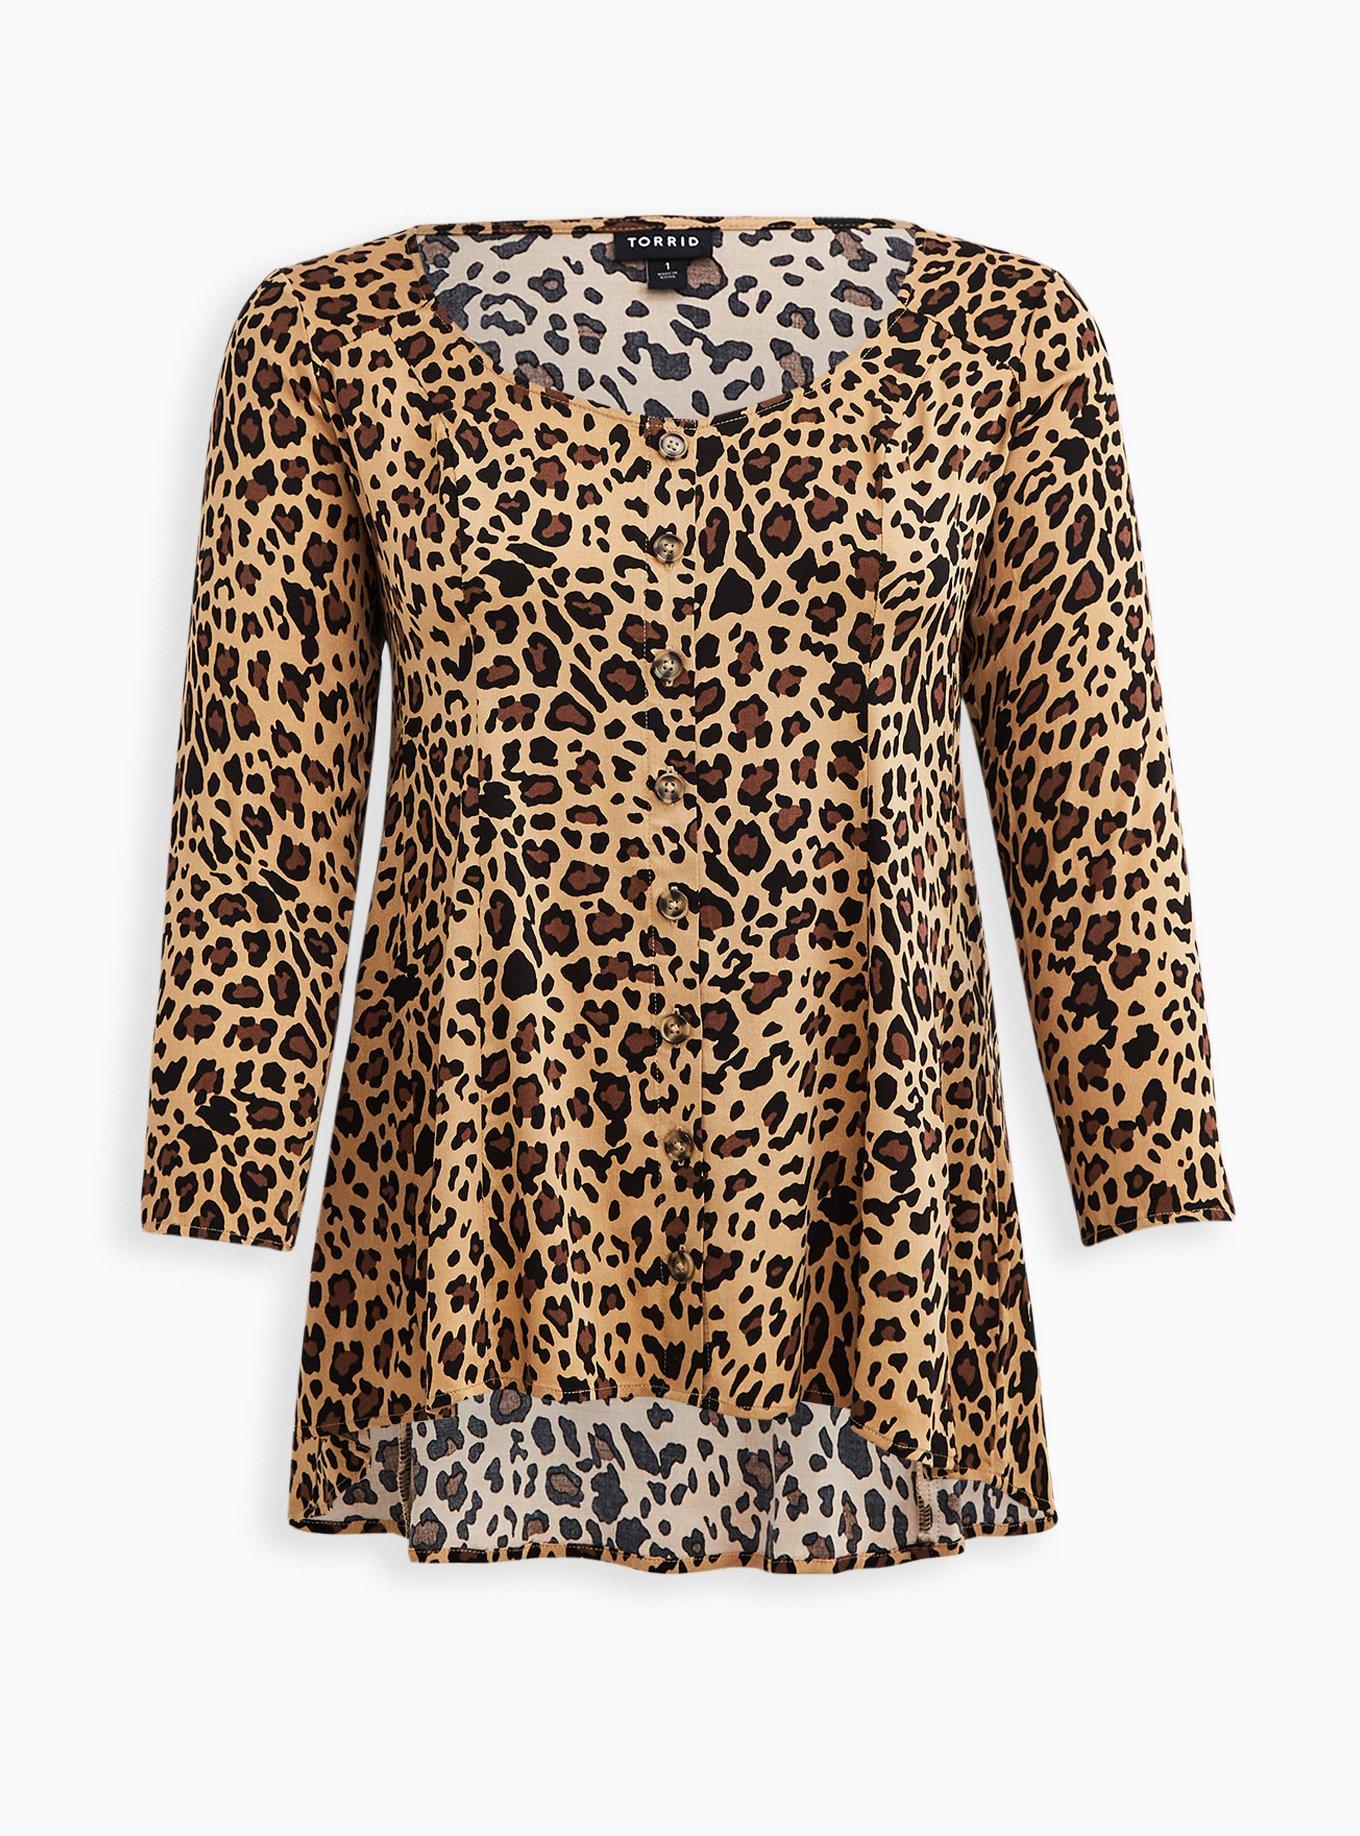 Plus Size - Fit & Flare Blouse - Stretch Challis Leopard Print - Torrid